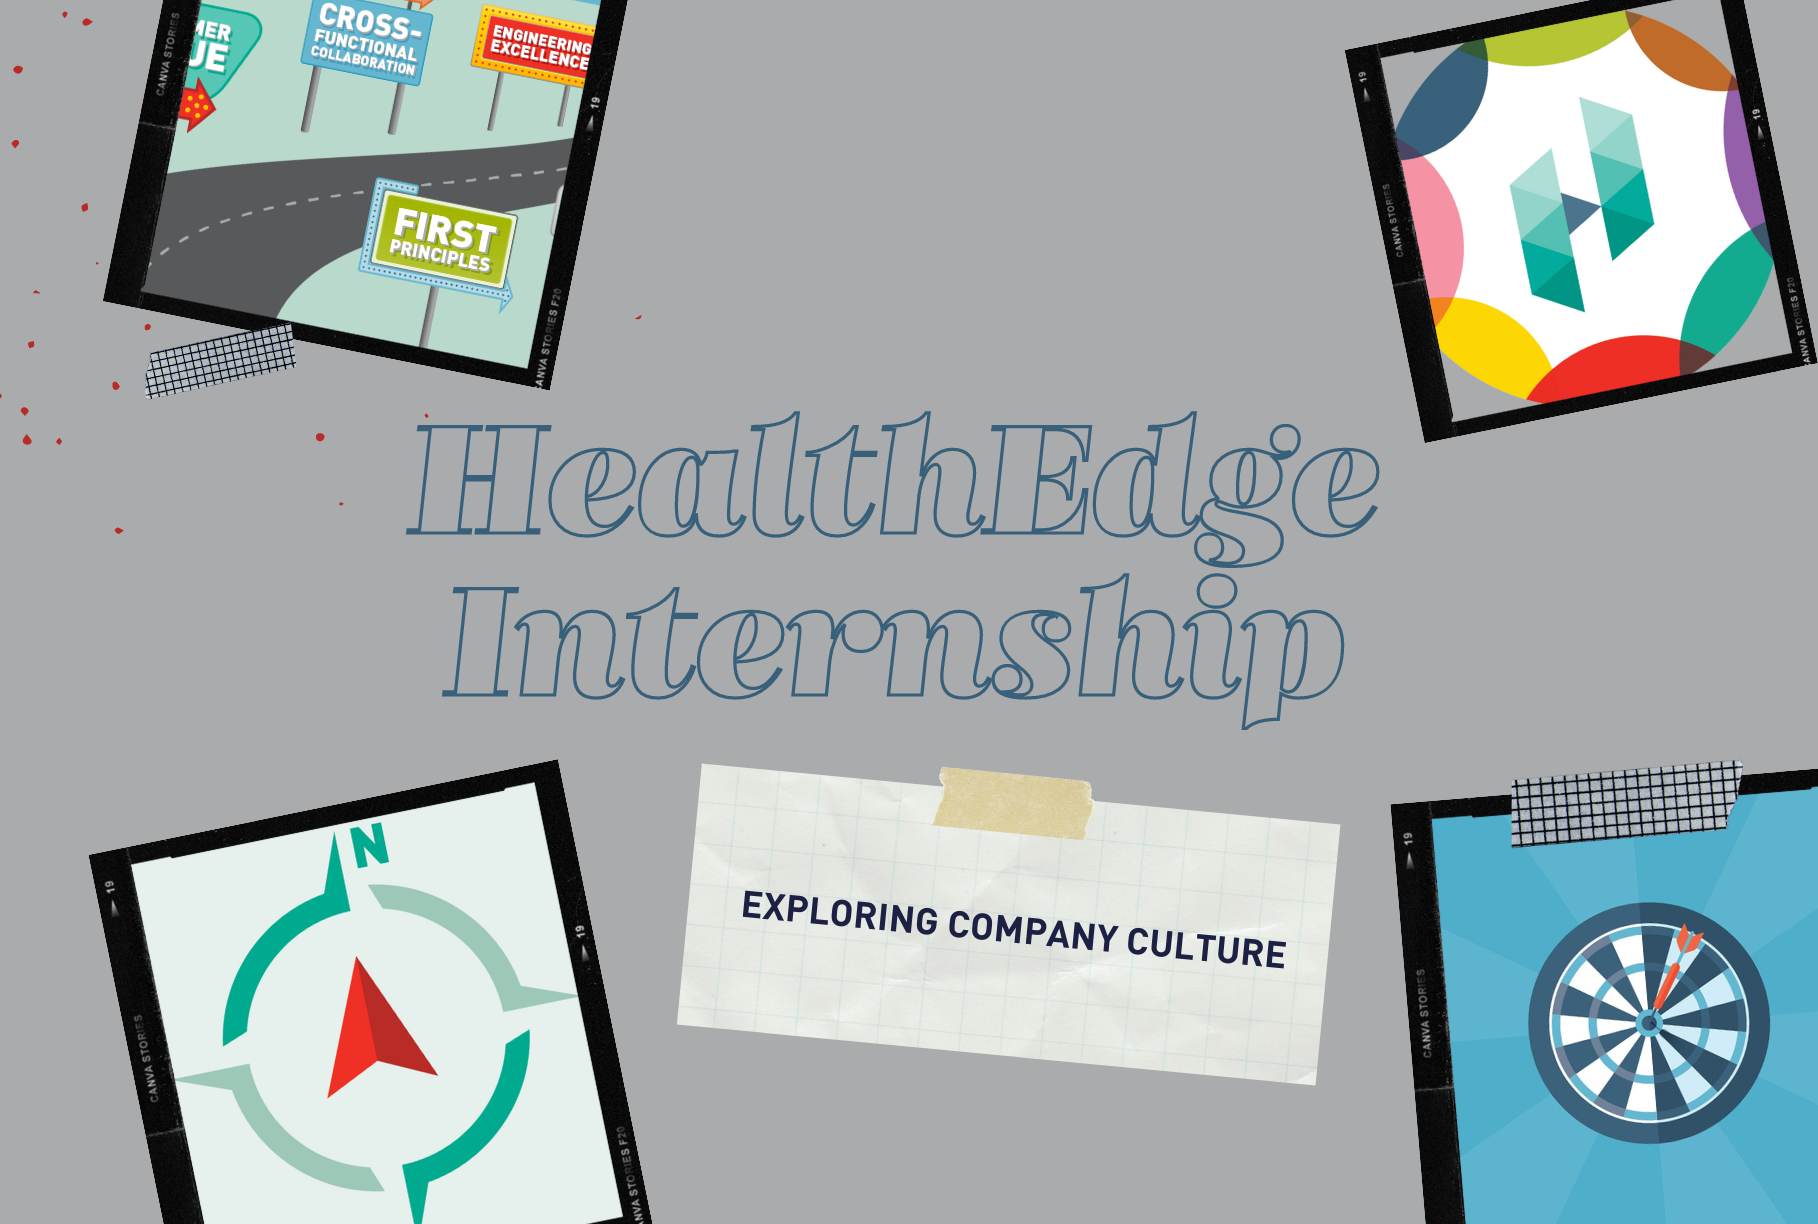 HealthEdge Internship: Exploring Company Culture